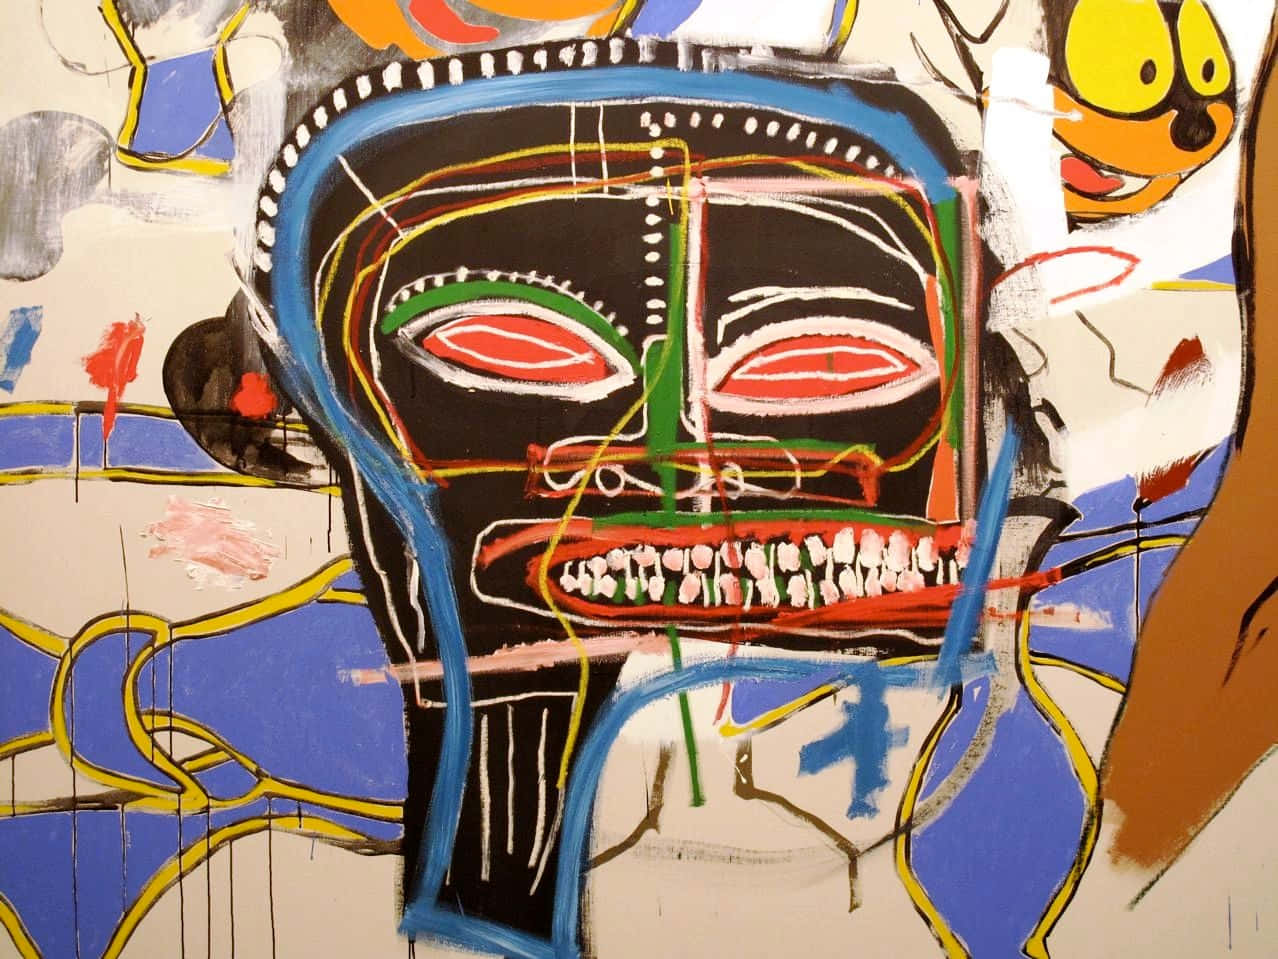 Det ikoniske kunstværk fra Jean-Michel Basquiat. Wallpaper